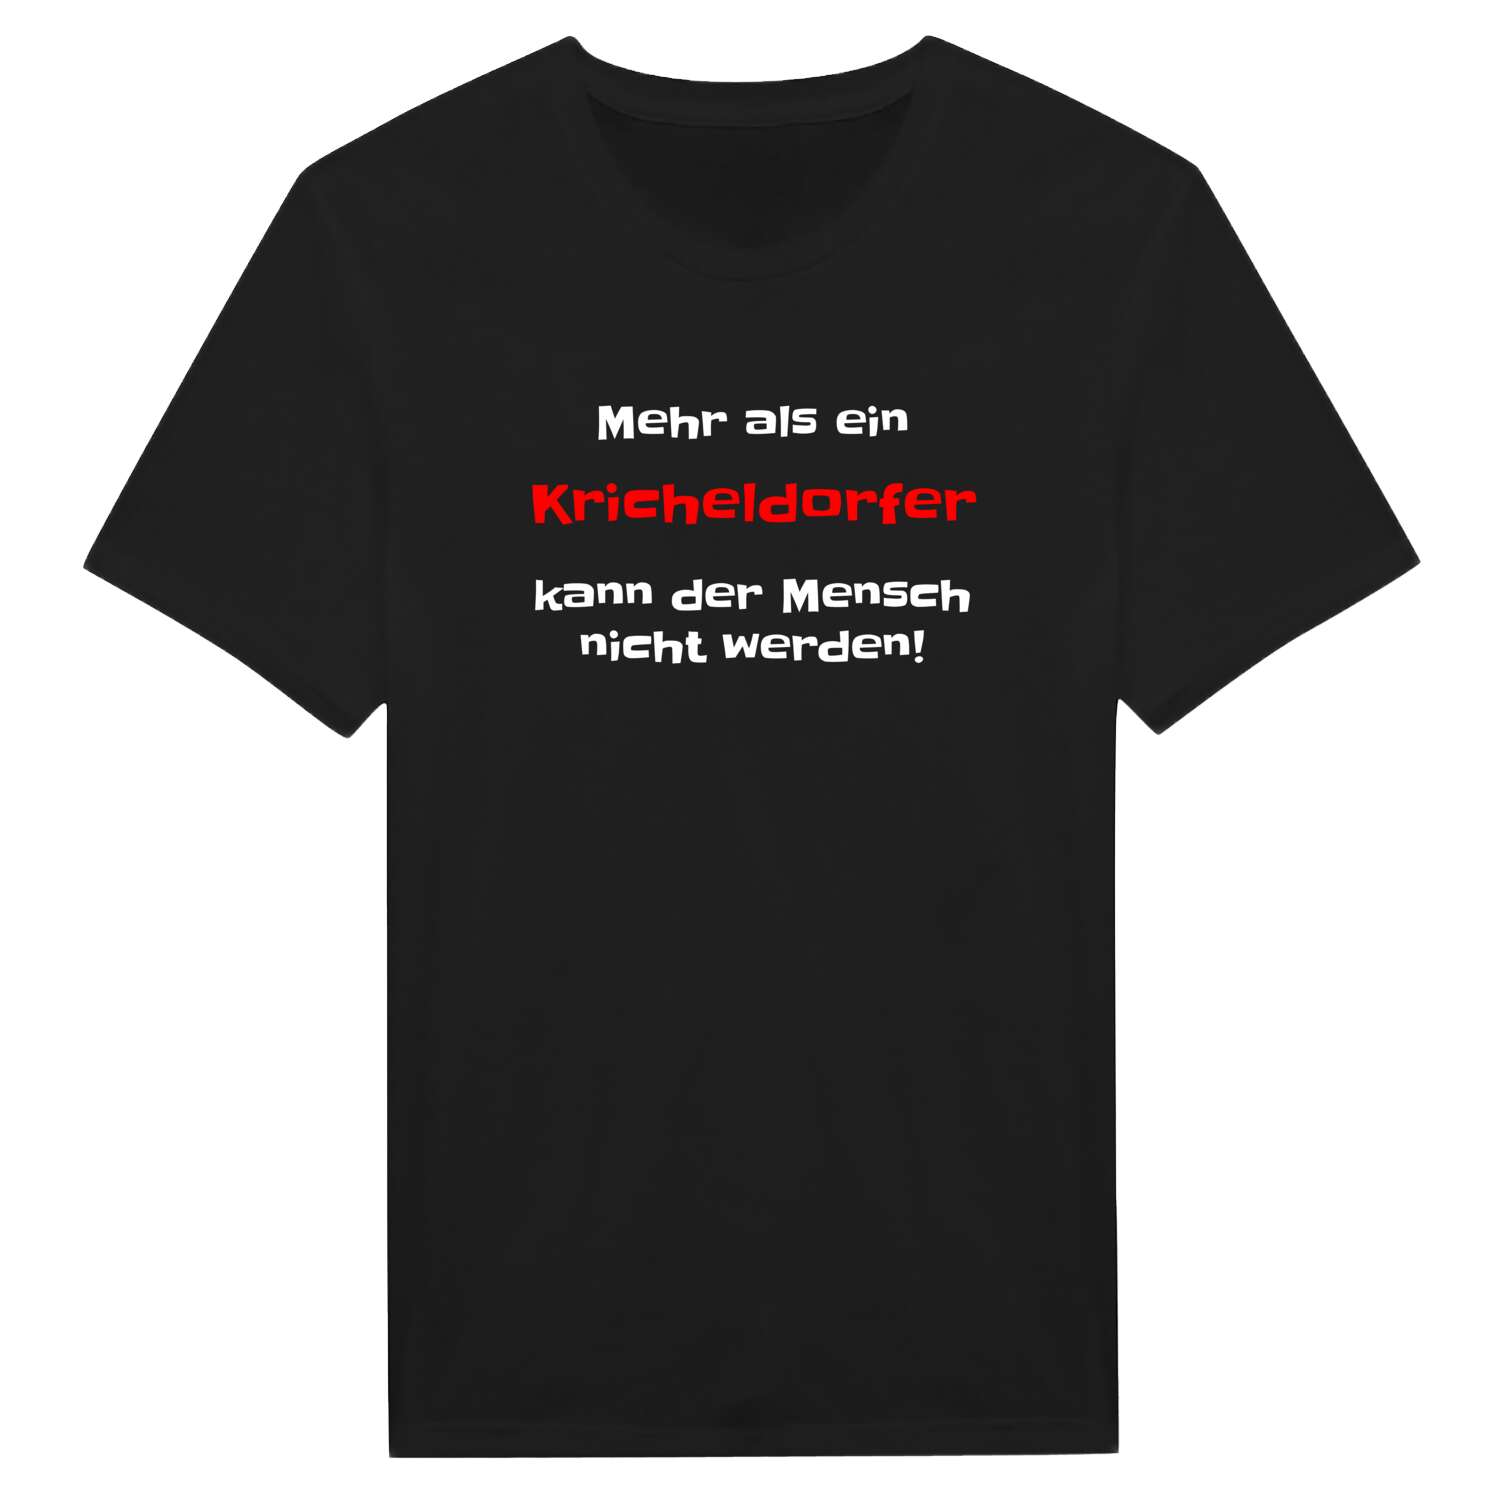 Kricheldorf T-Shirt »Mehr als ein«